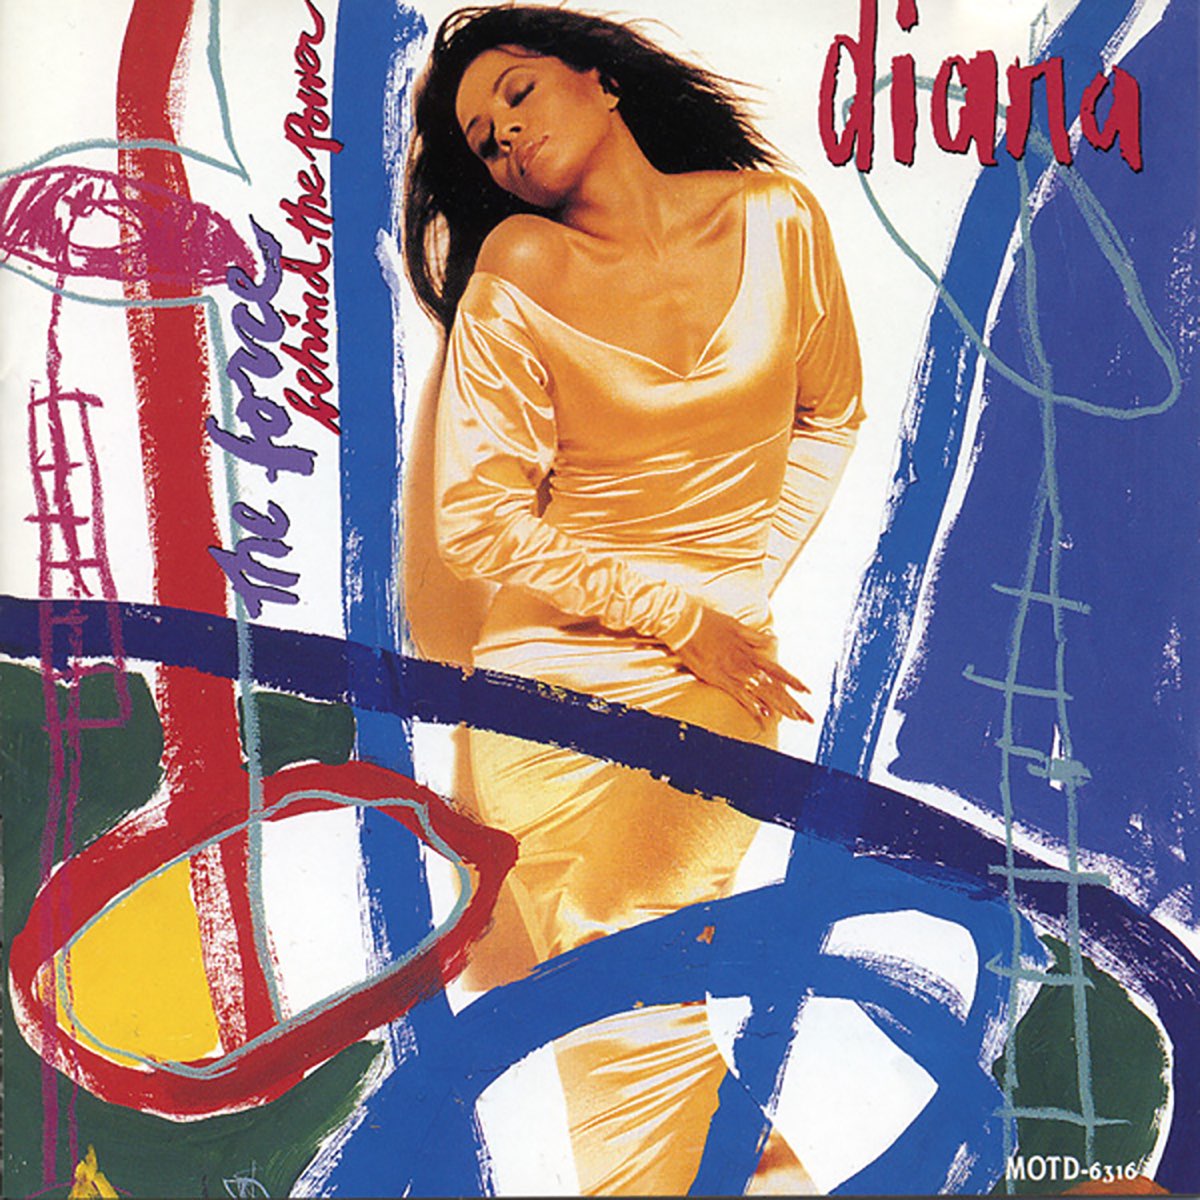 Diana Ross & Al B. Sure! — No Matter What You Do cover artwork